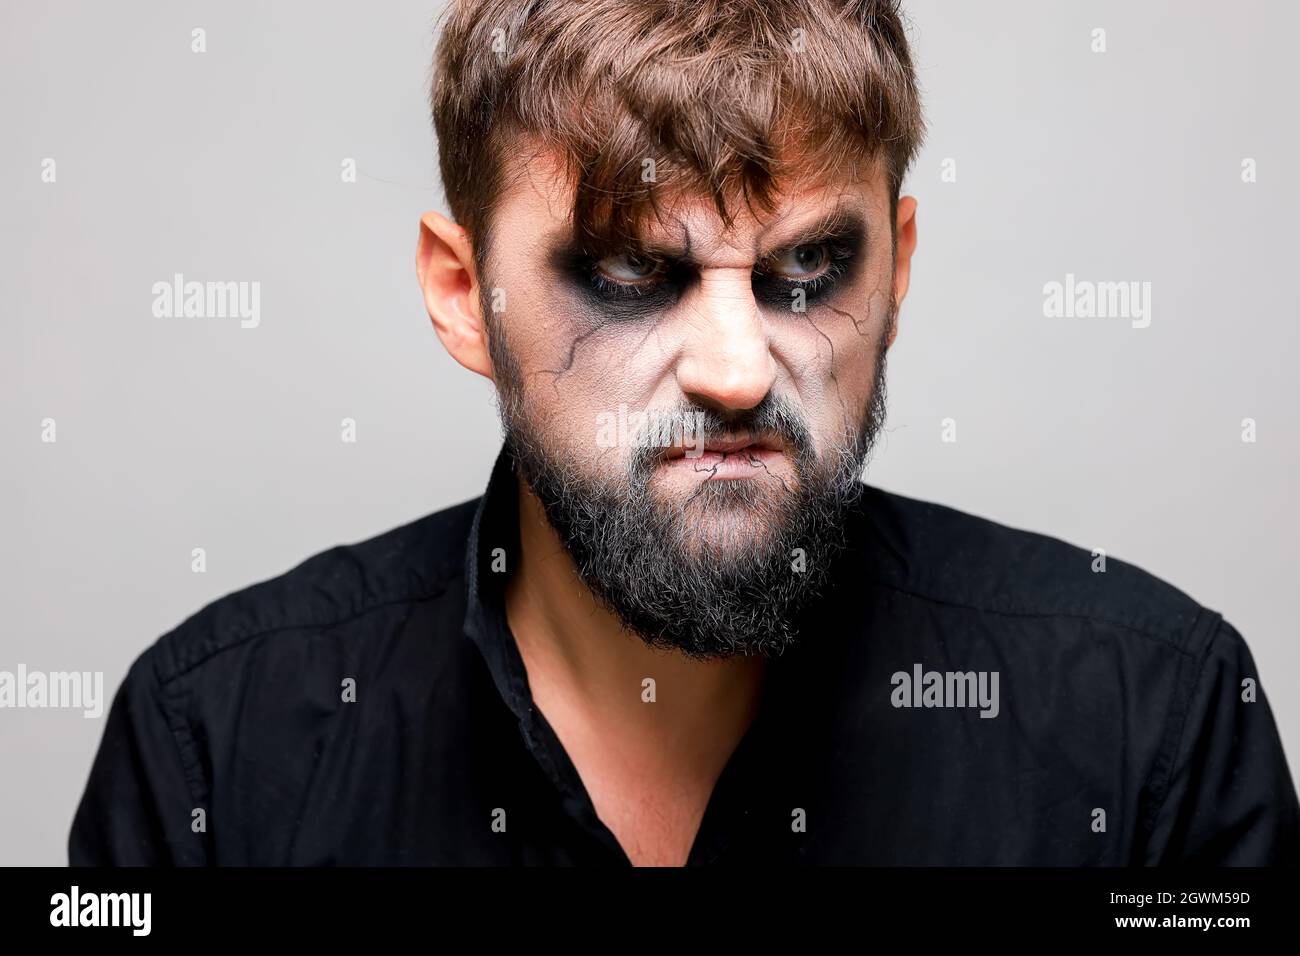 Retrato de un hombre con barba y un look amenazador con maquillaje al  estilo de los muertos vivientes el día de Todos los Santos el 31 de octubre  Fotografía de stock - Alamy